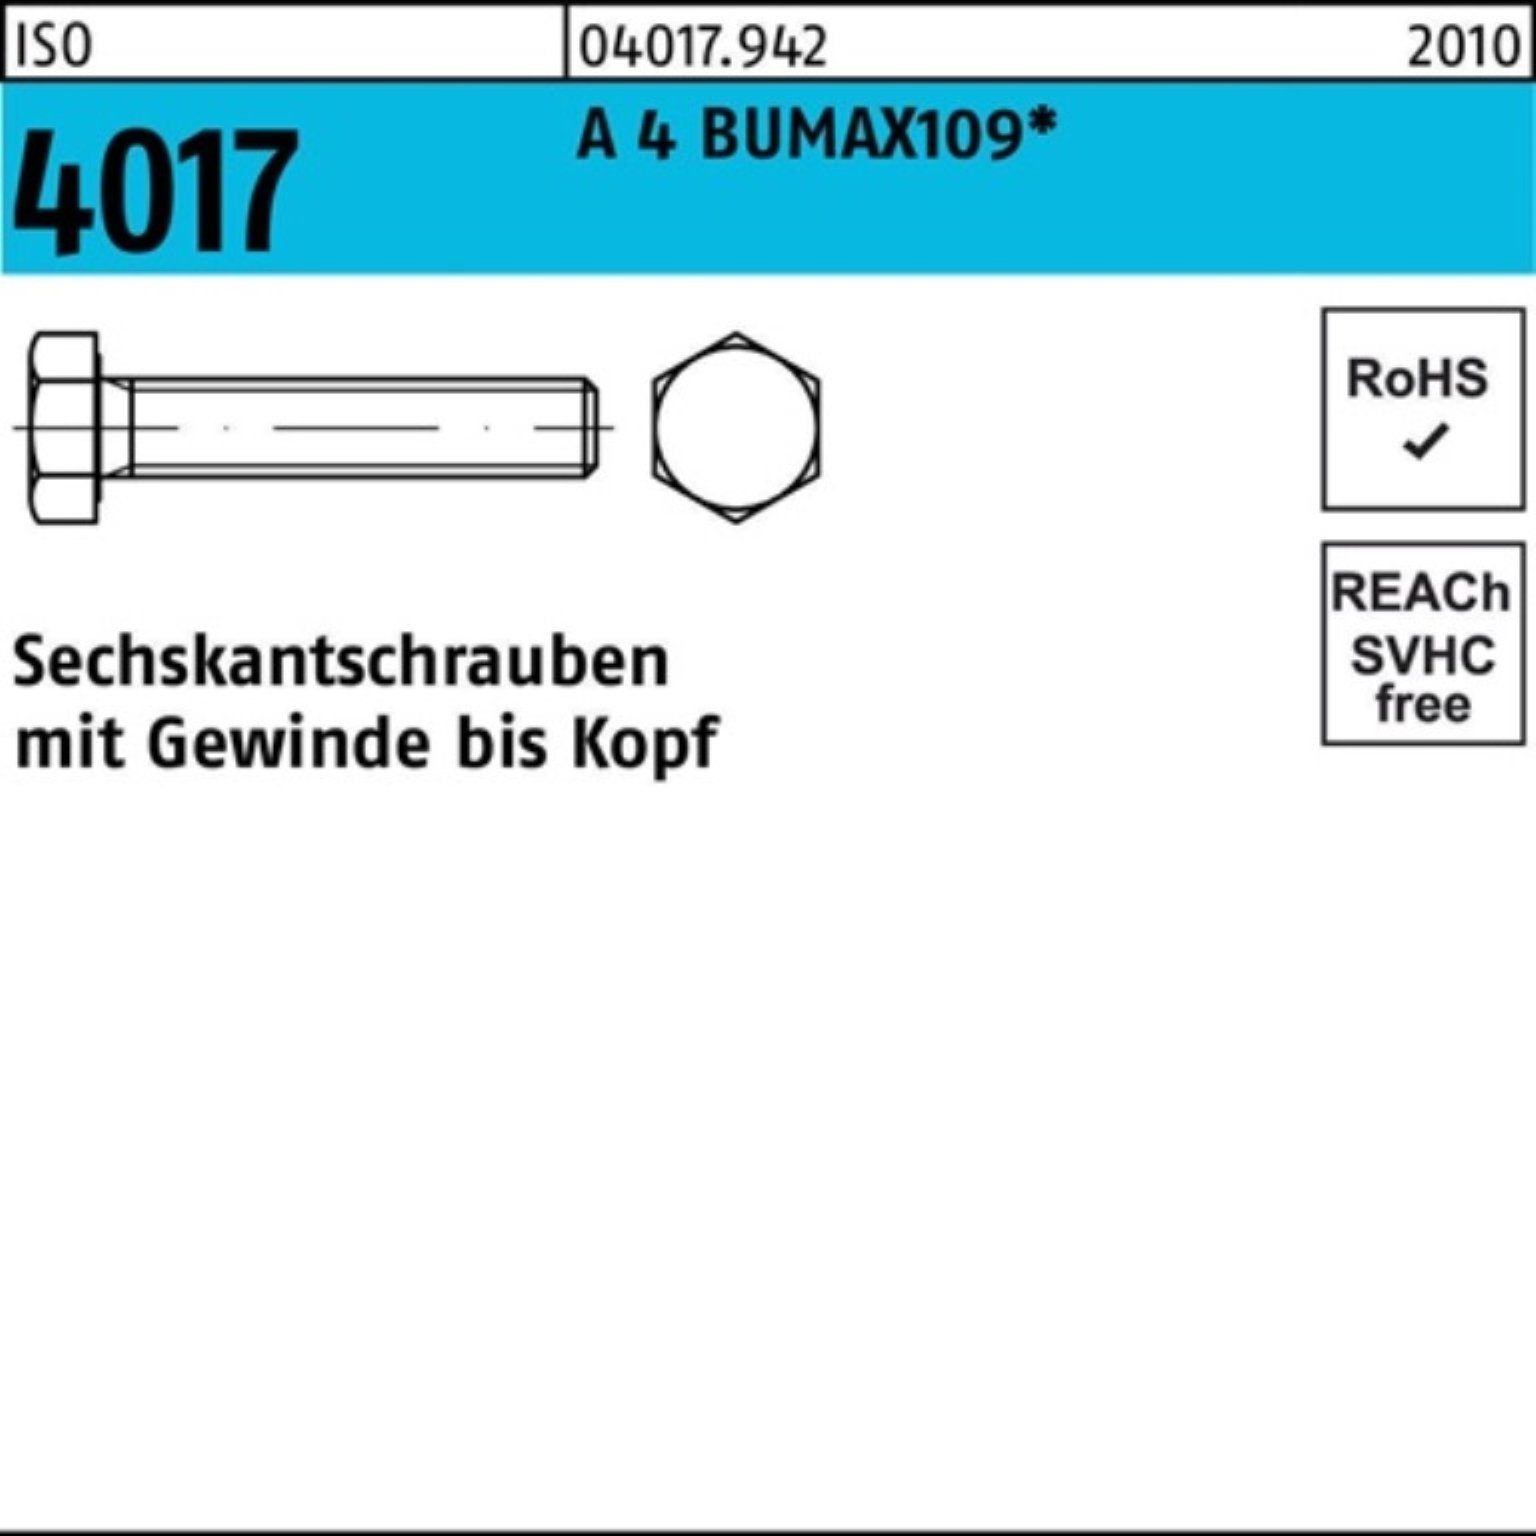 Bufab Sechskantschraube 100er Pack Sechskantschraube ISO 4017 VG M8x 30 A 4 BUMAX109 50 Stück